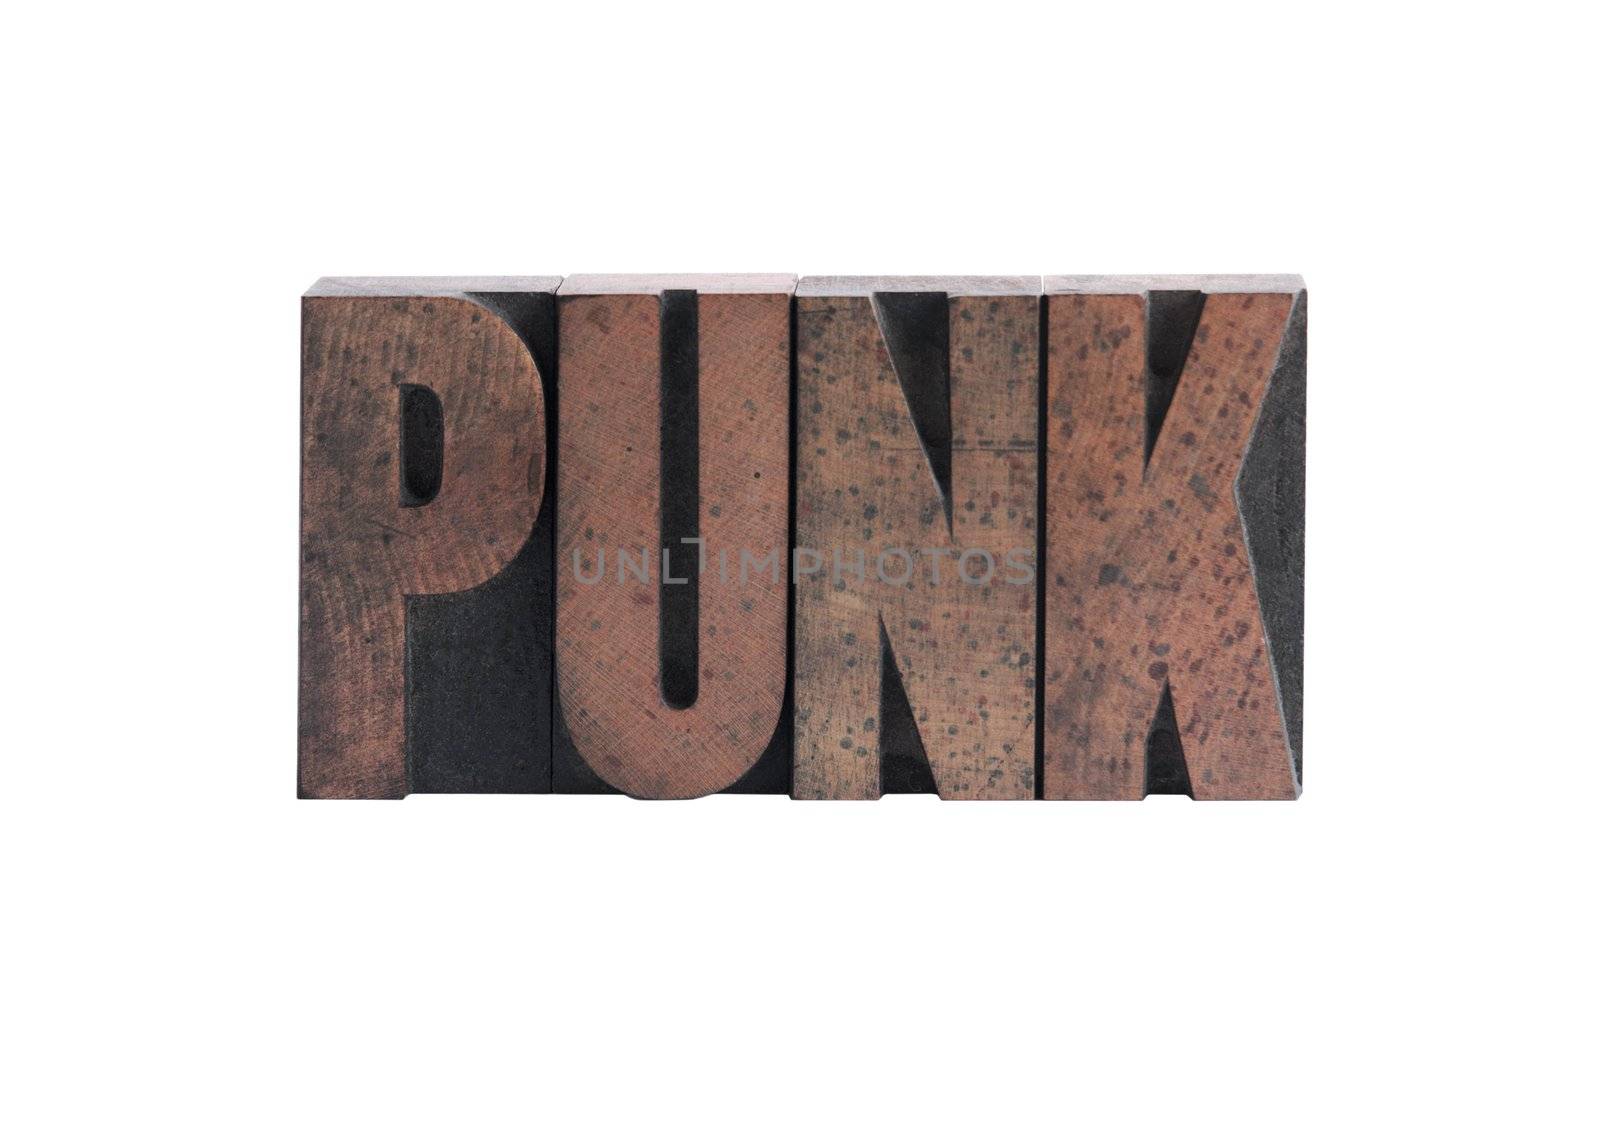 punk in letterpress wood type by nebari